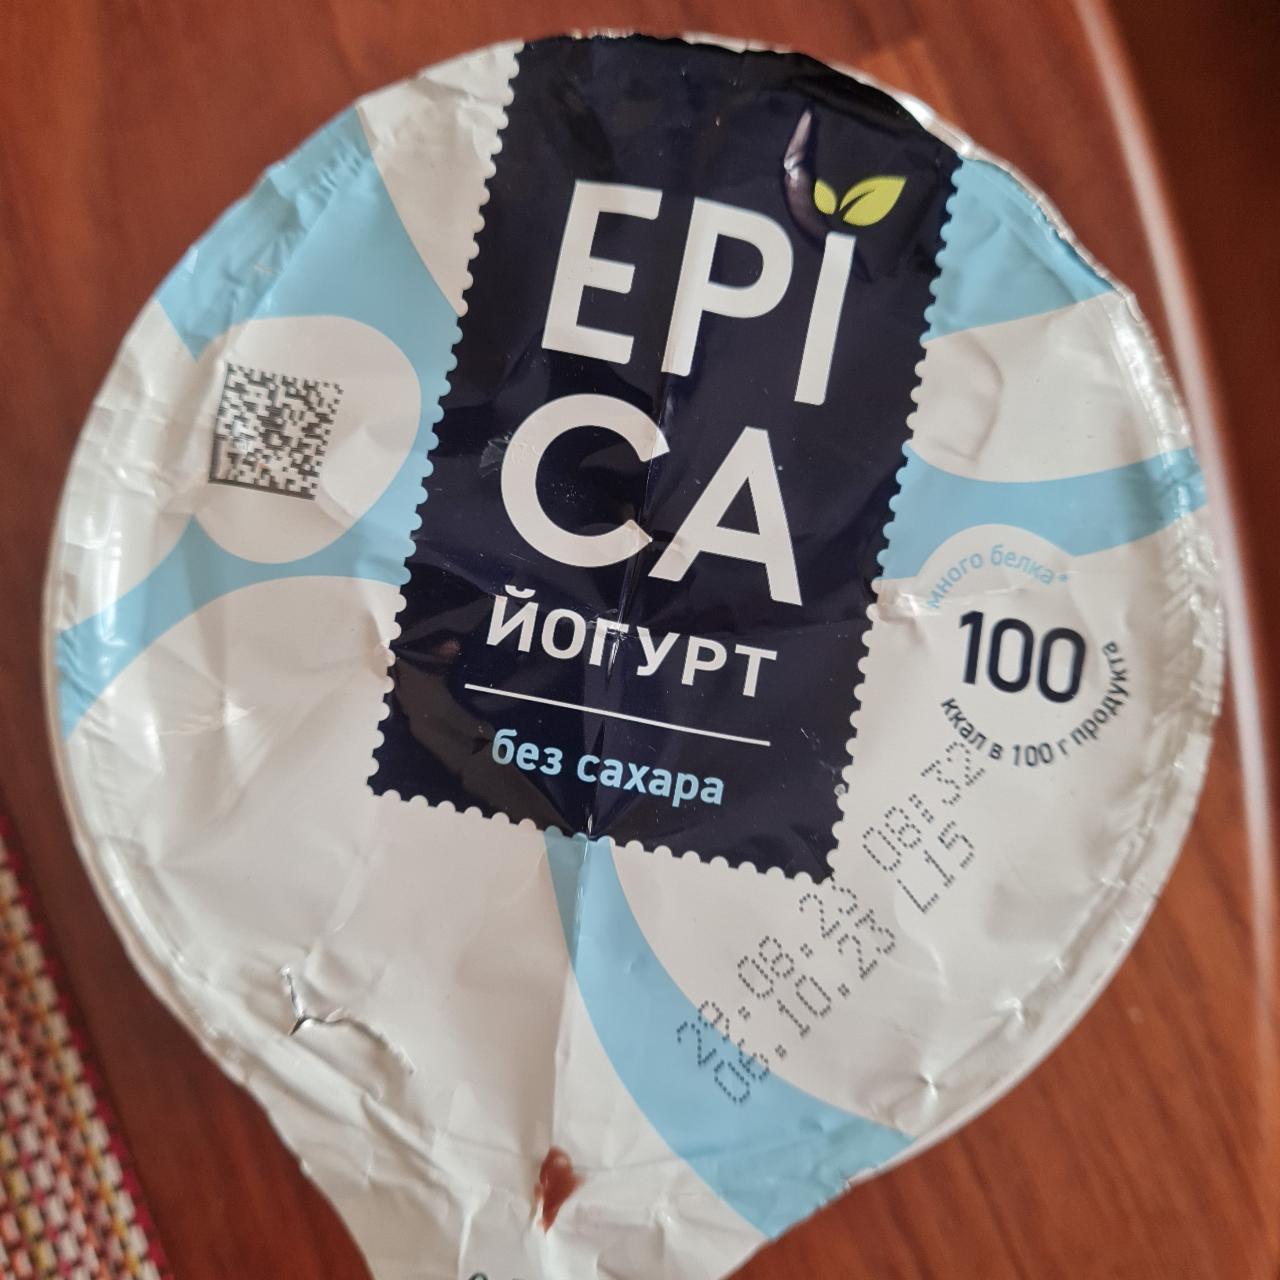 Фото - йогурт без сахара Epica